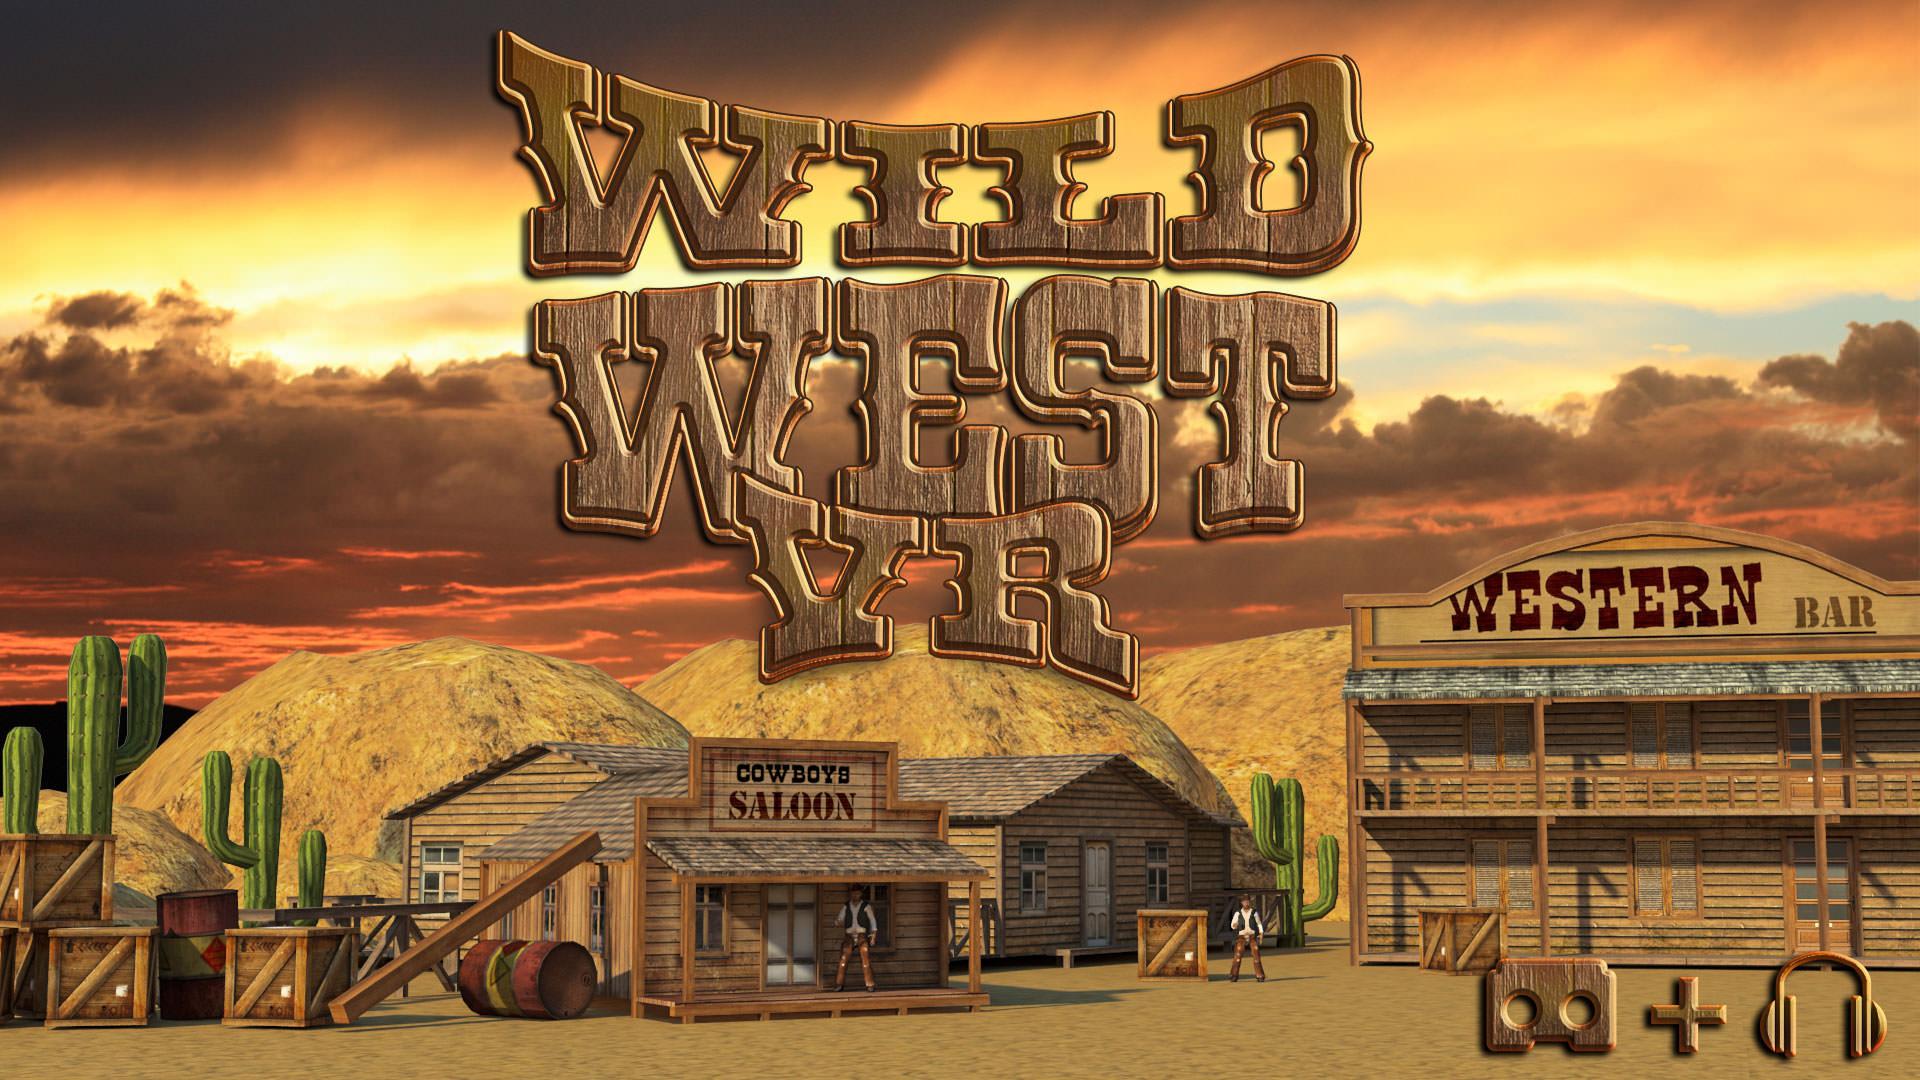 Wild West Cartoon Wallpapers - Top Free Wild West Cartoon Backgrounds ...